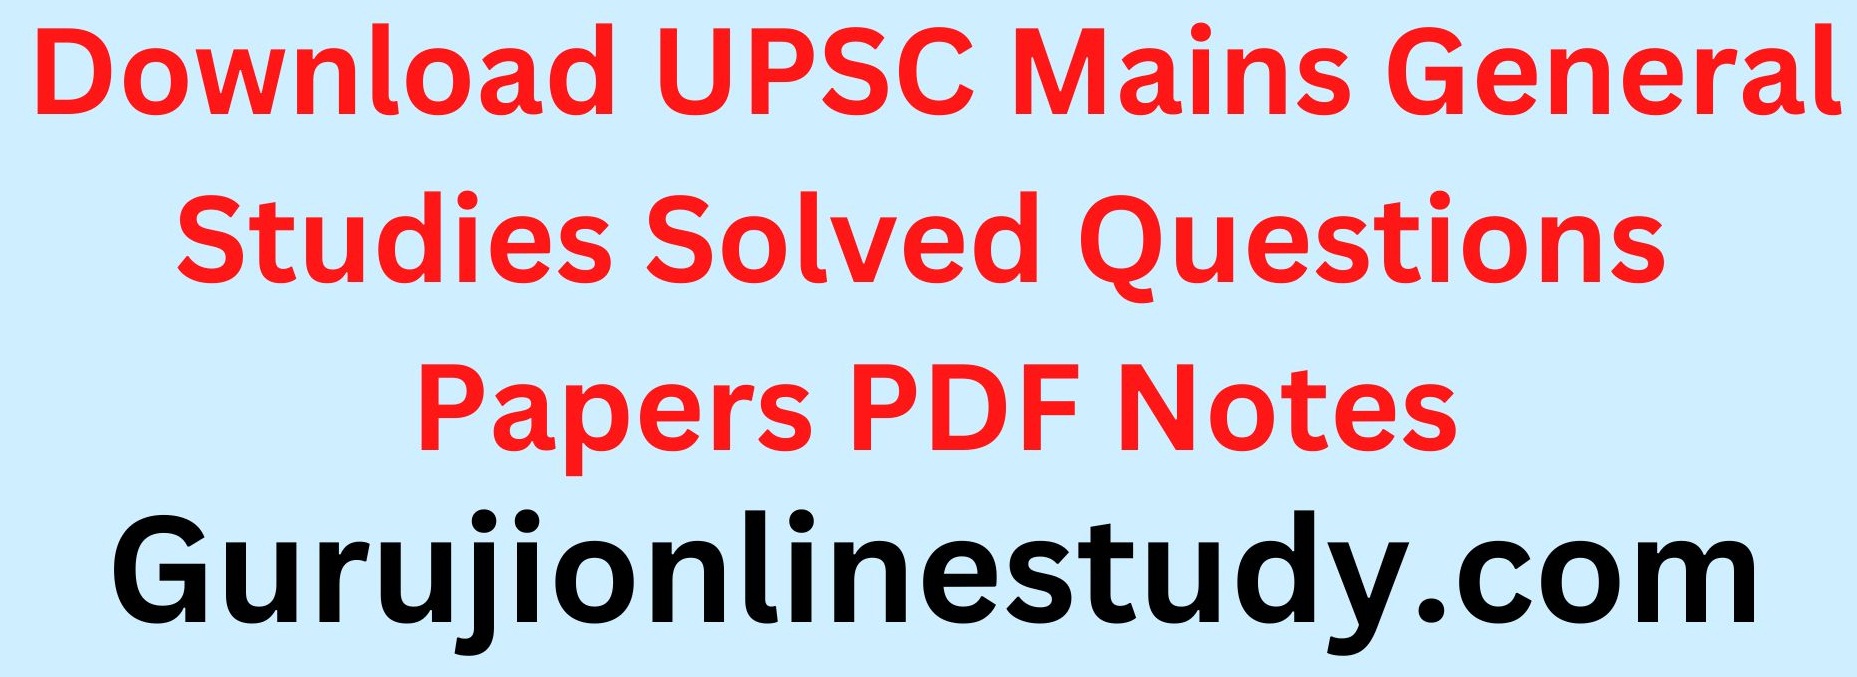 UPSC Mains General Studies